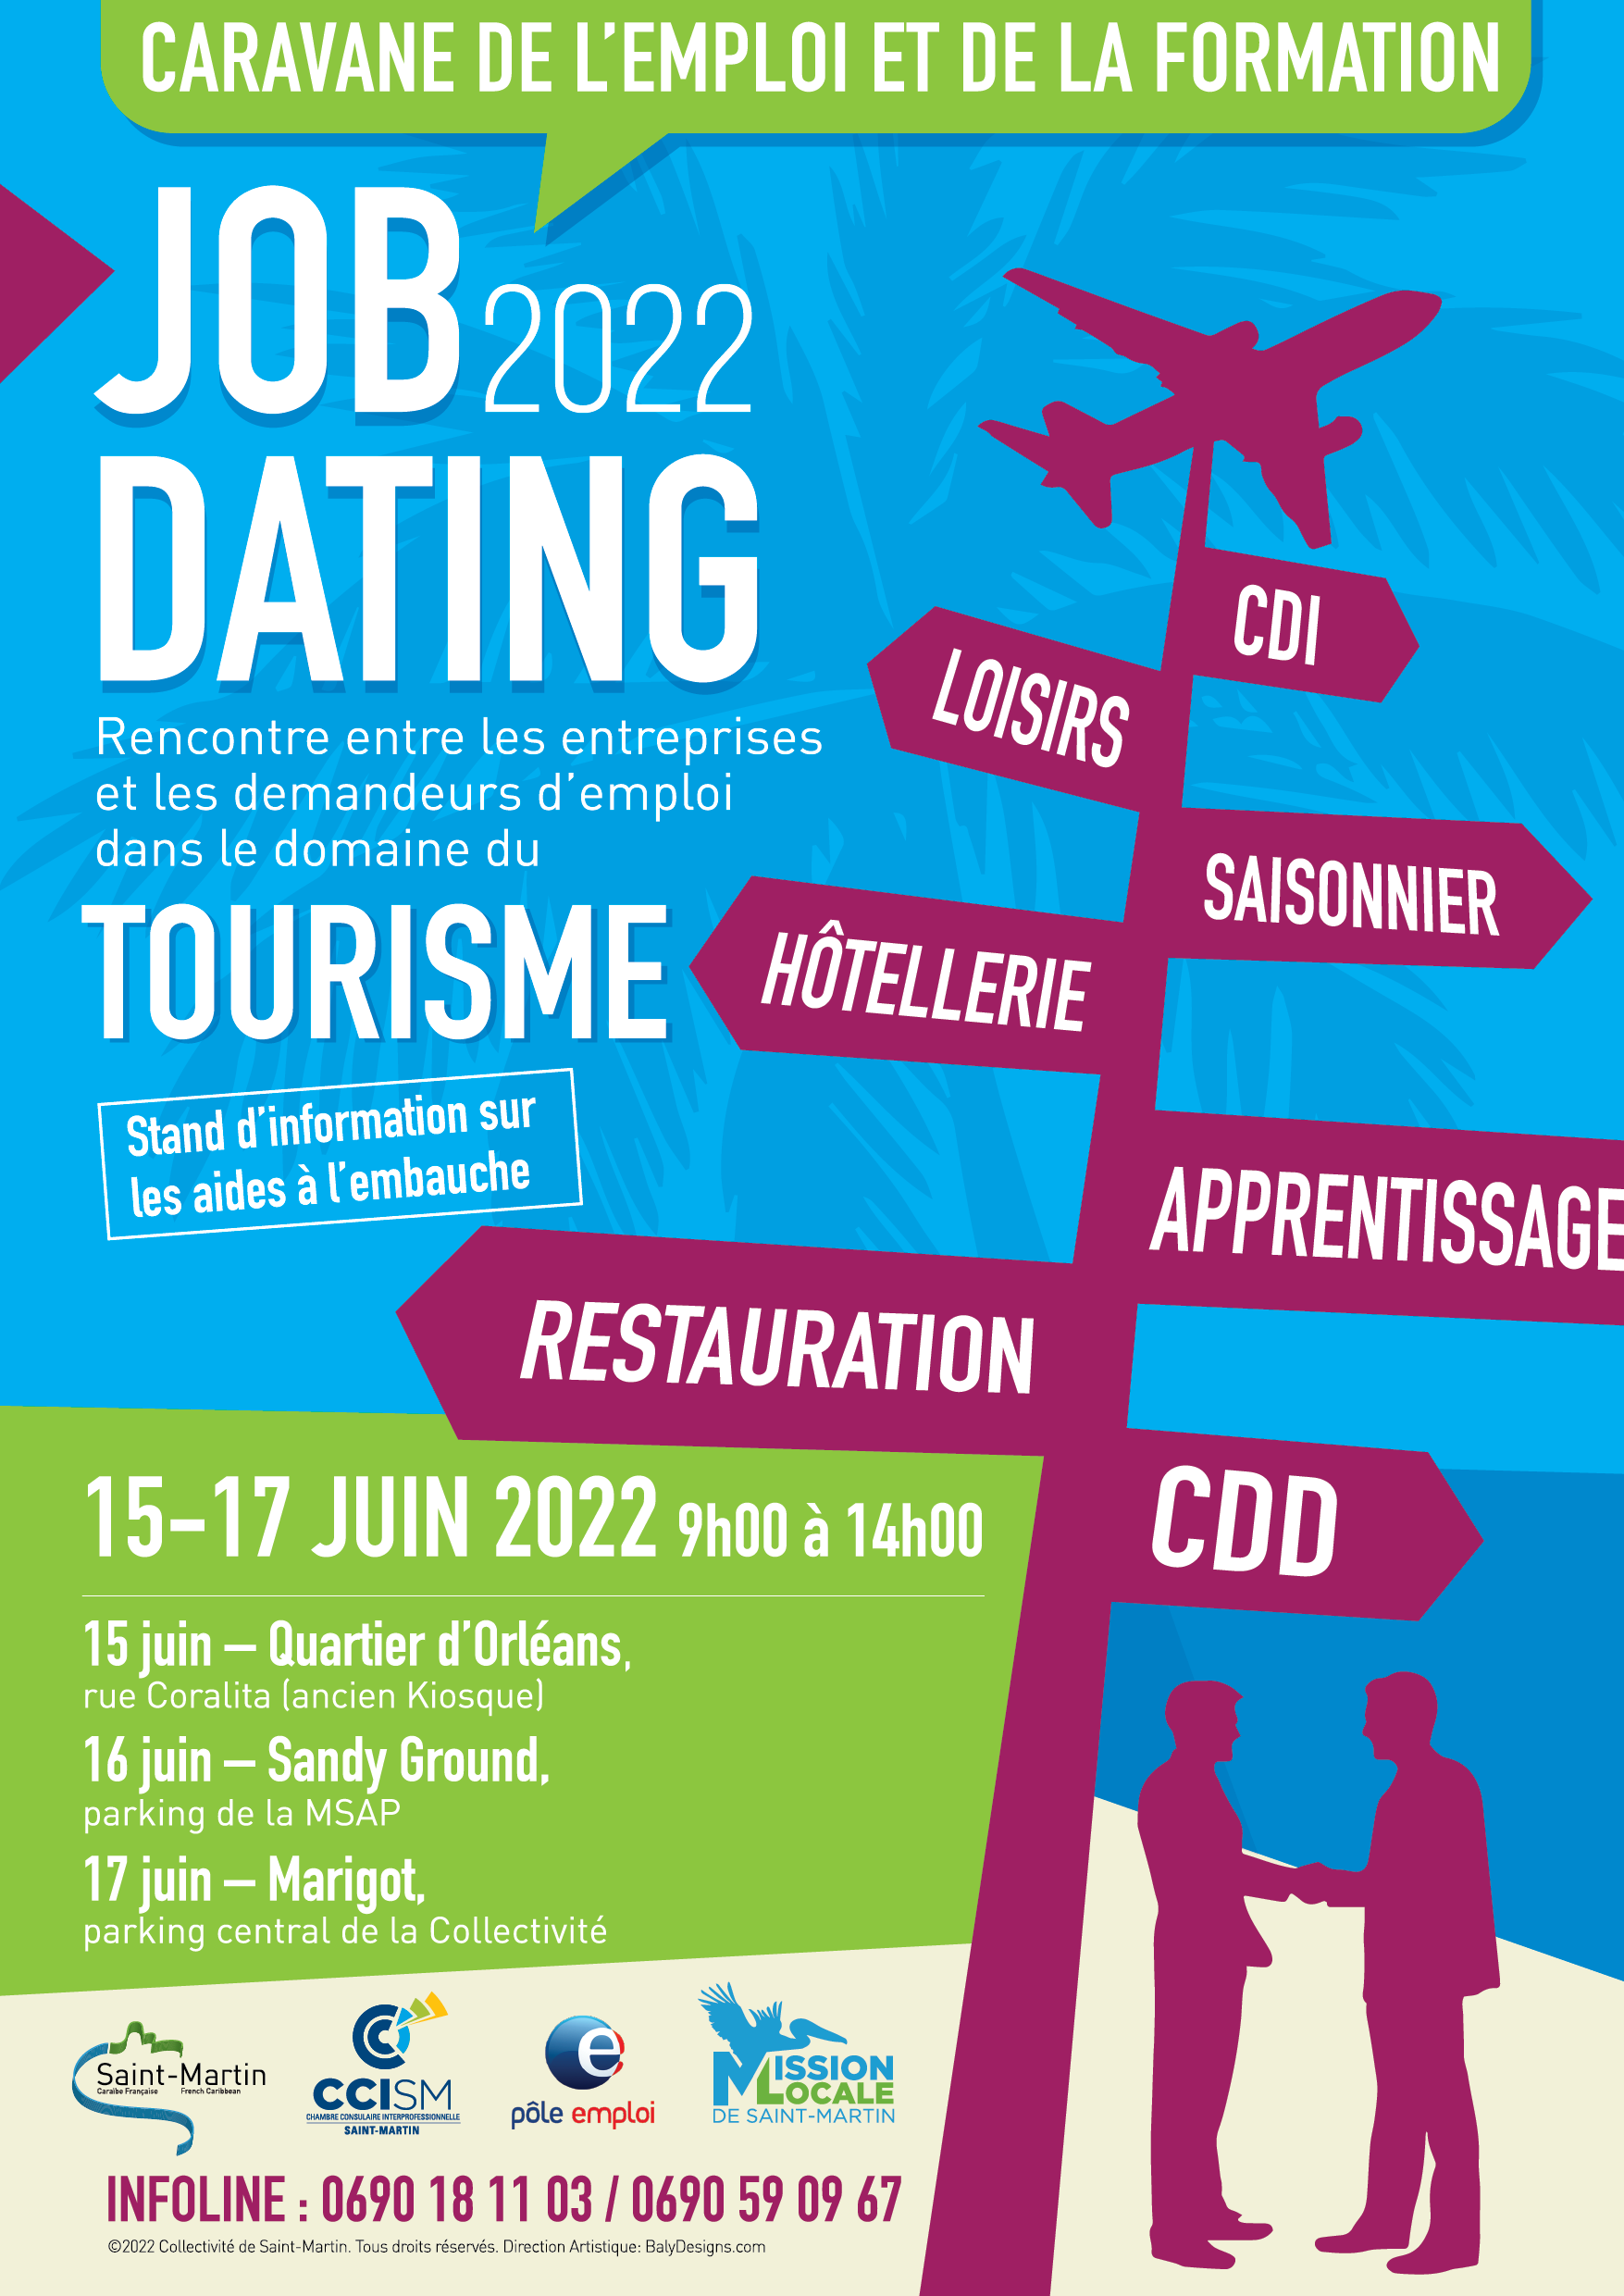 EDL - JOB DATING 2022  Rejoignez-vous au Job Dating tourisme ! 